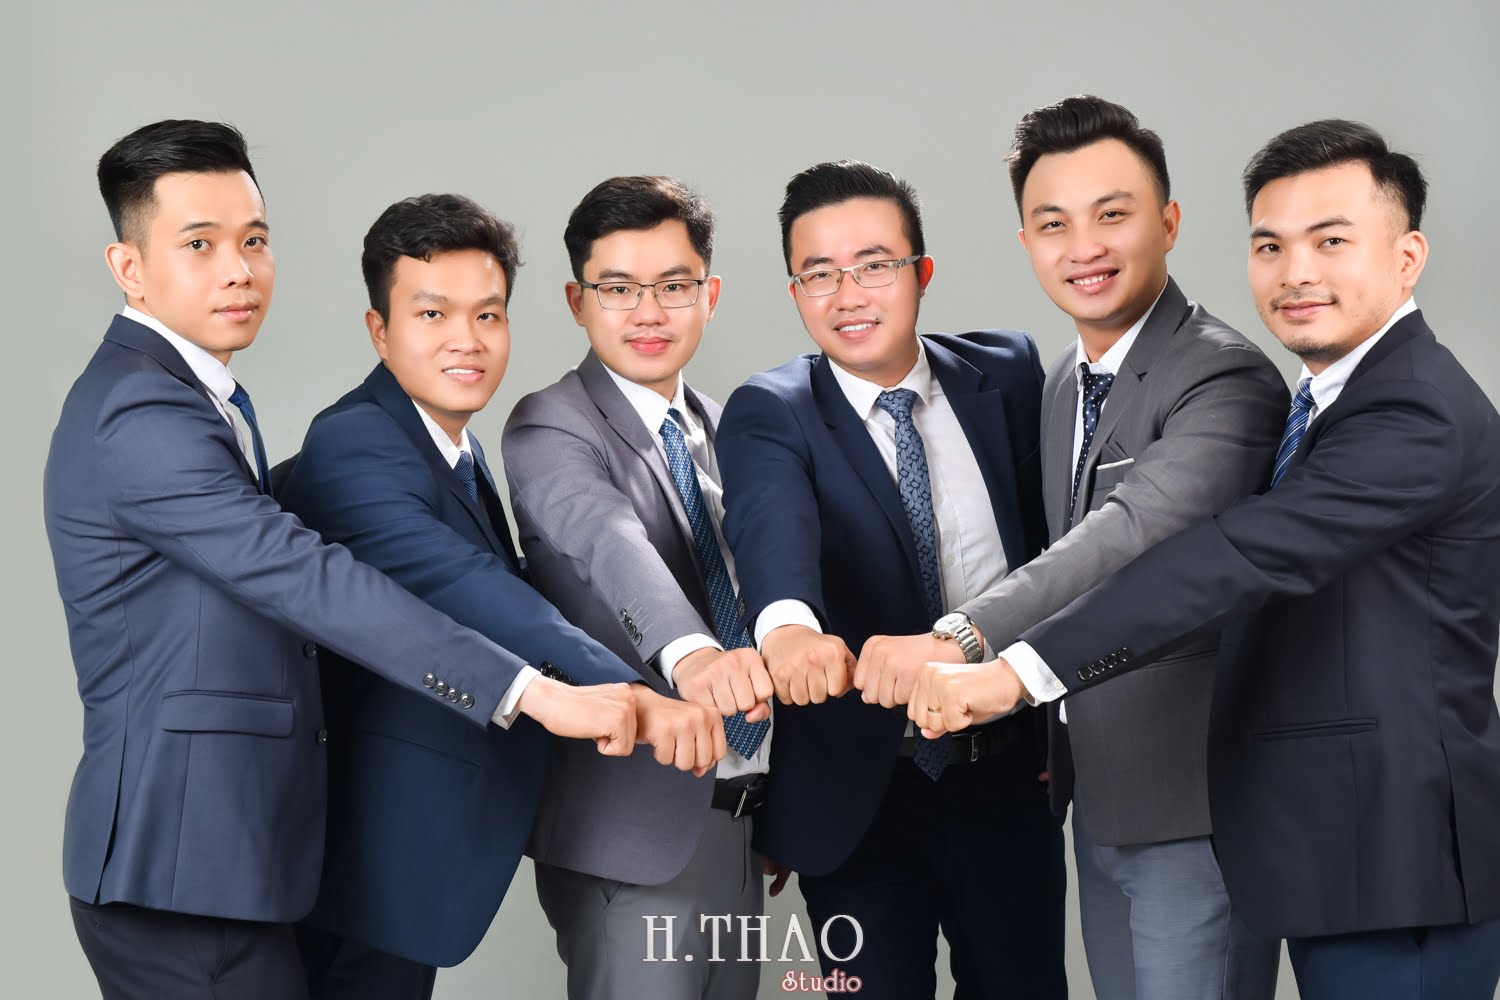 Anh profile cong ty 13 - Chụp ảnh profile cho đội nhóm sale ngân hàng - HThao Studio